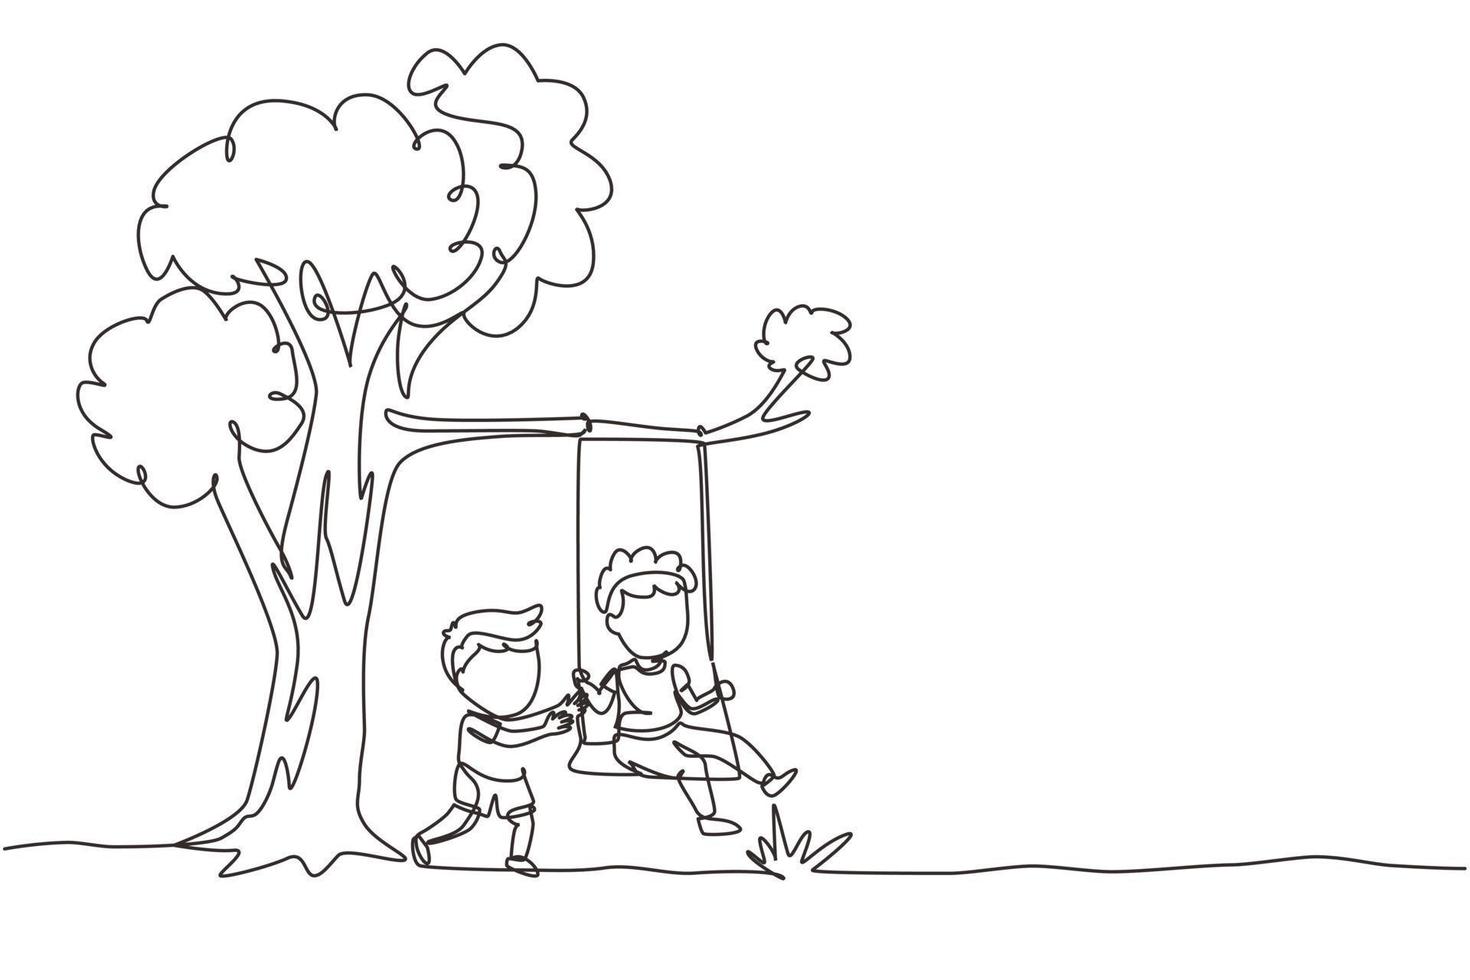 einzelne durchgehende linie zeichnet glückliche zwei jungen, die auf einer baumschaukel spielen. Fröhliche Kinder beim Schaukeln unter einem Baum. Kinder spielen auf dem Spielplatz. dynamische einzeilige abgehobene betragsgrafikdesign-vektorillustration vektor